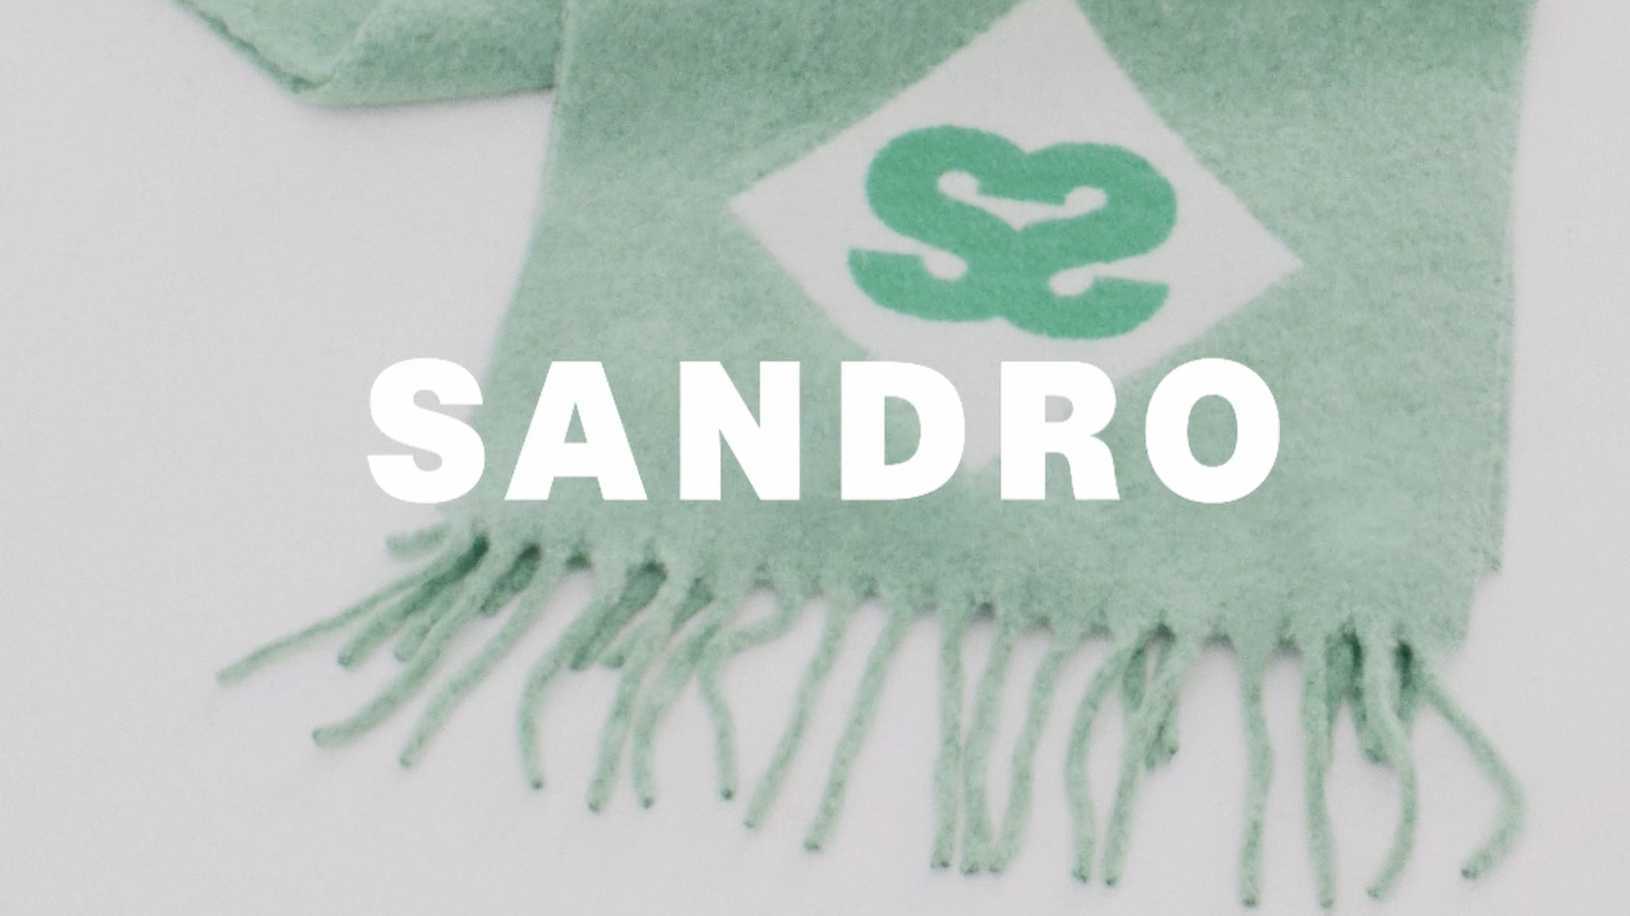 Sandro X'MAS #SandroLetTheMagicIn